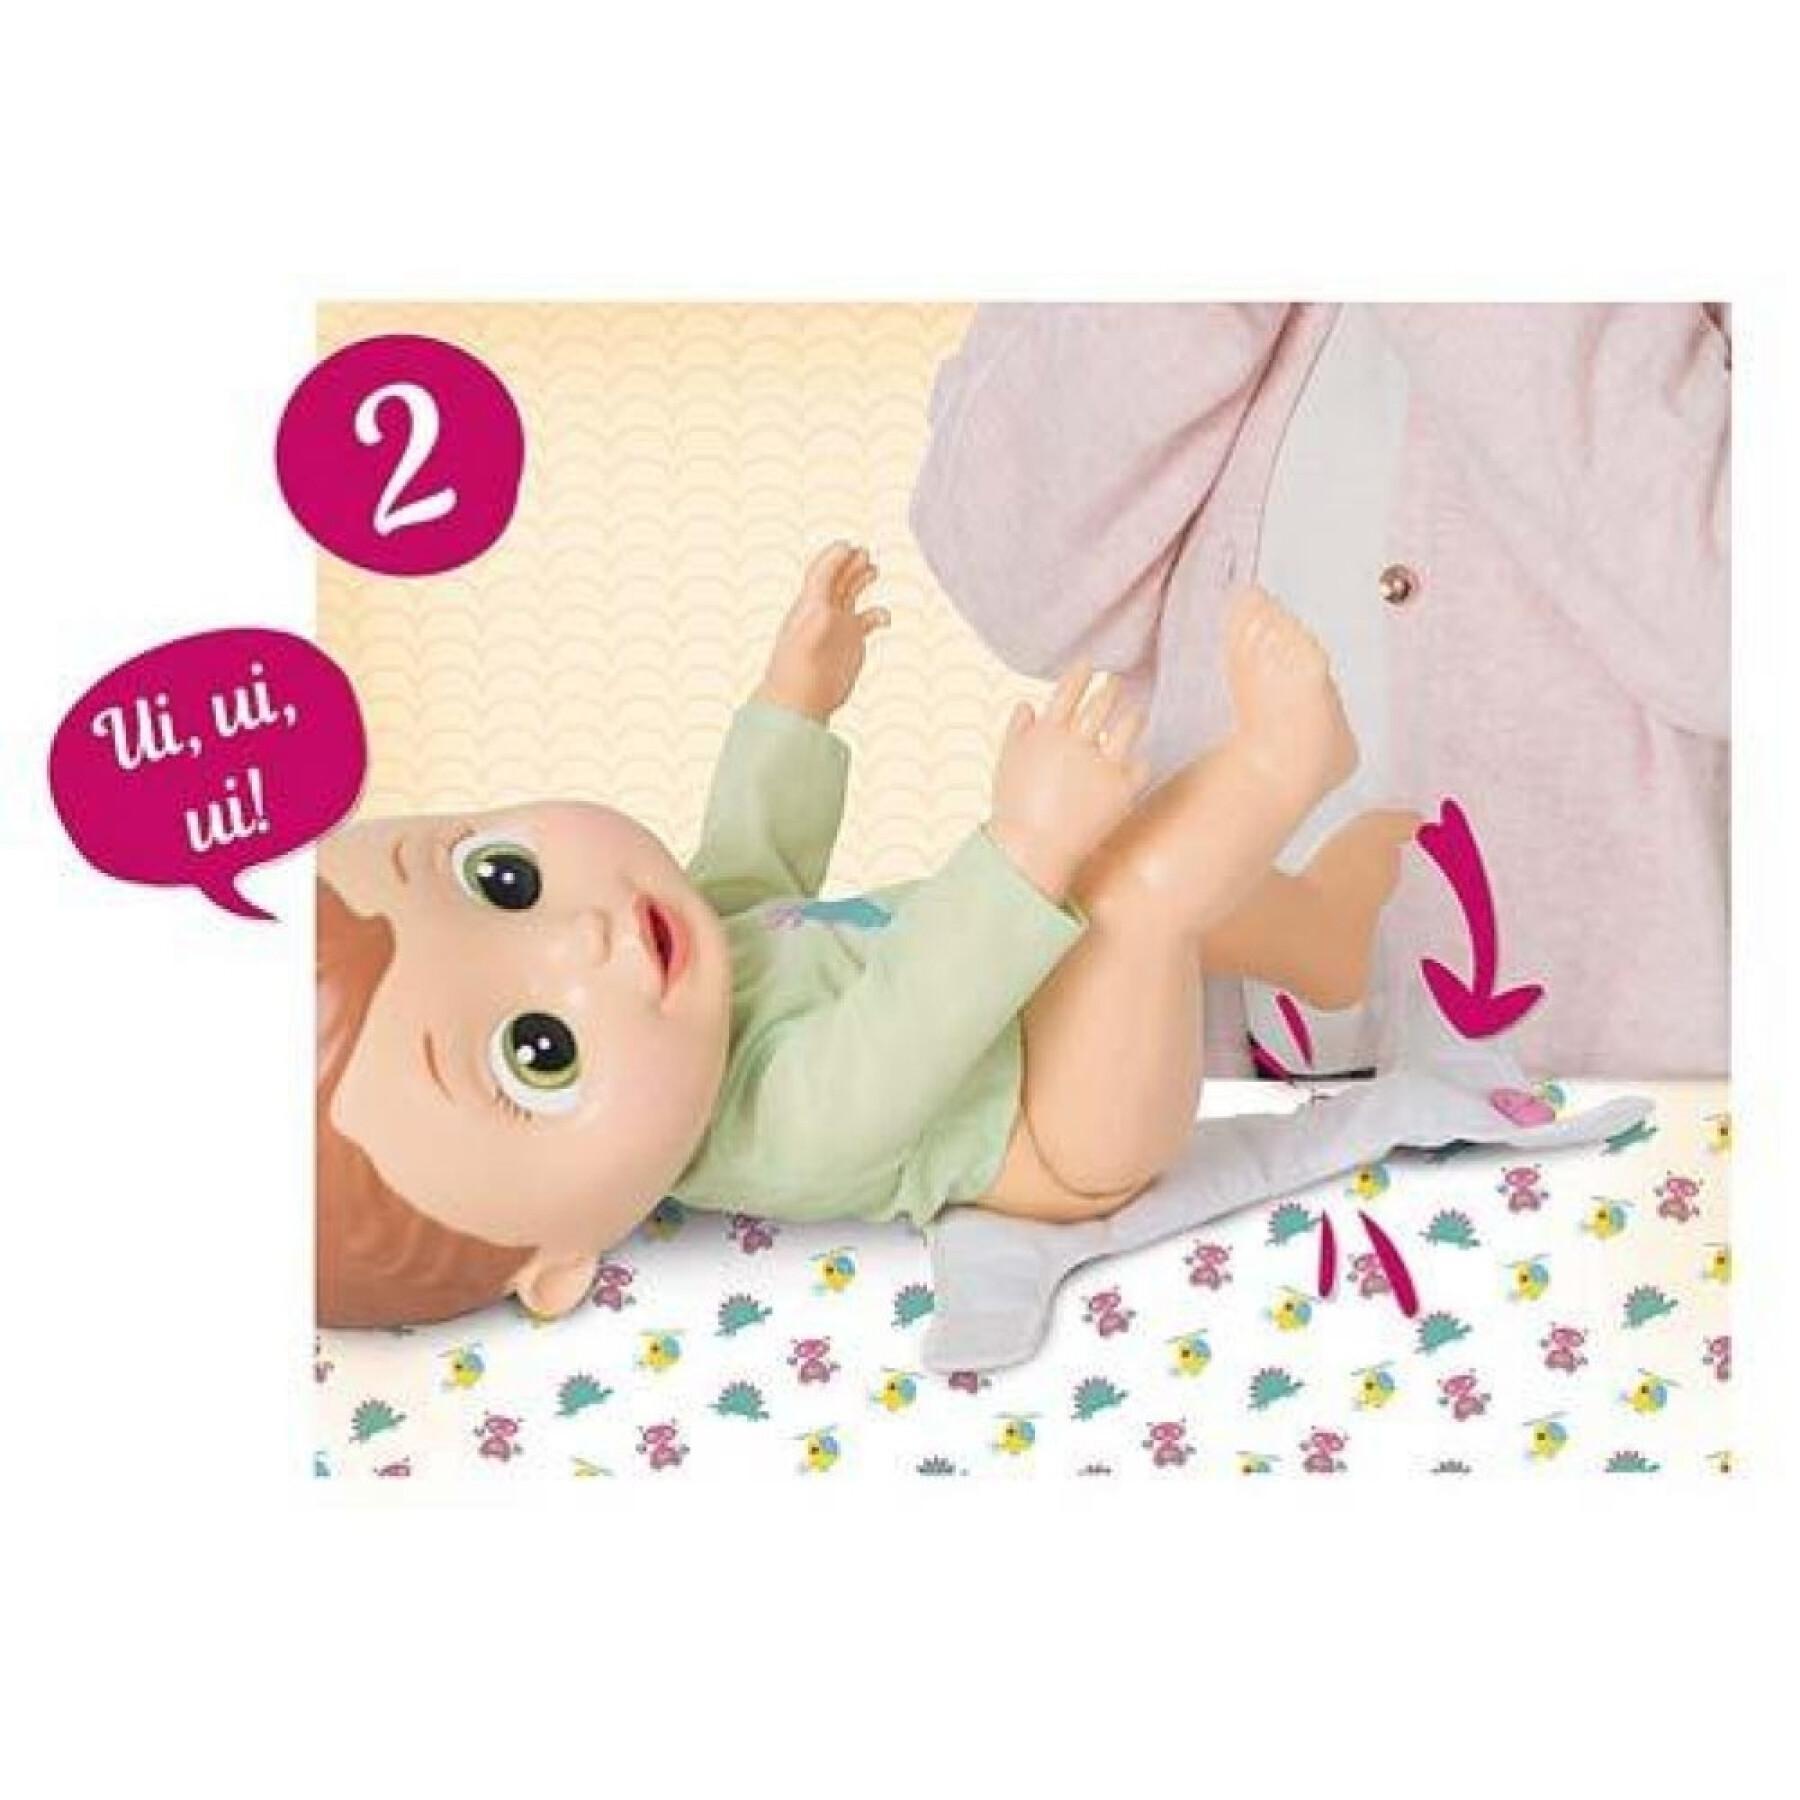 Bambolina che fa la pipì - 3 modelli IMC Toys 30 cm